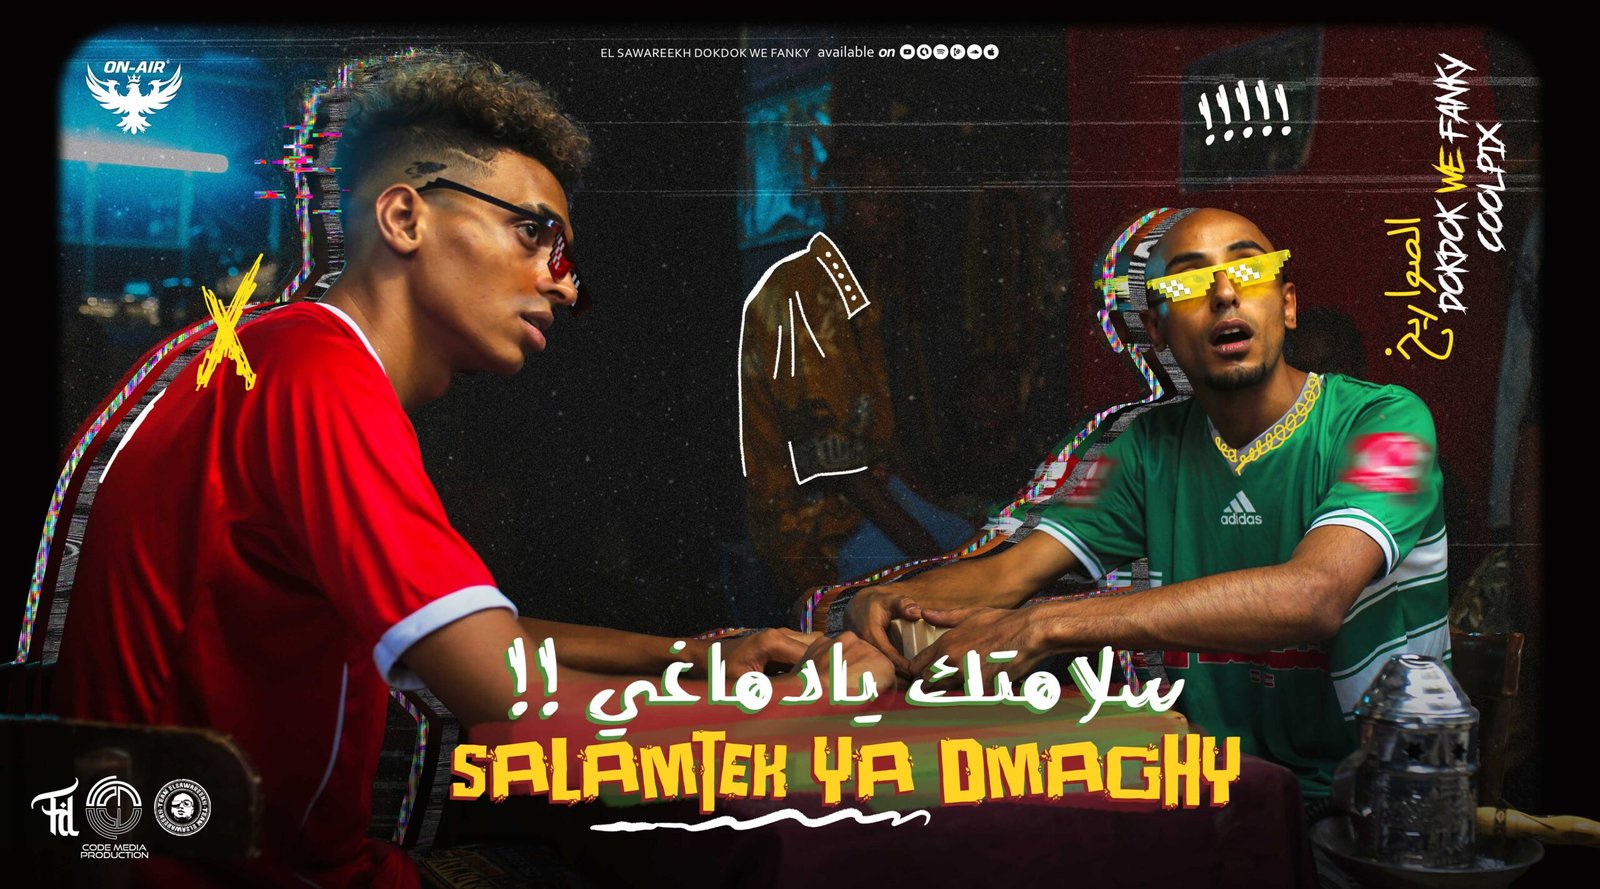 Official clip poster (Salamtek Ya Dmaghy)